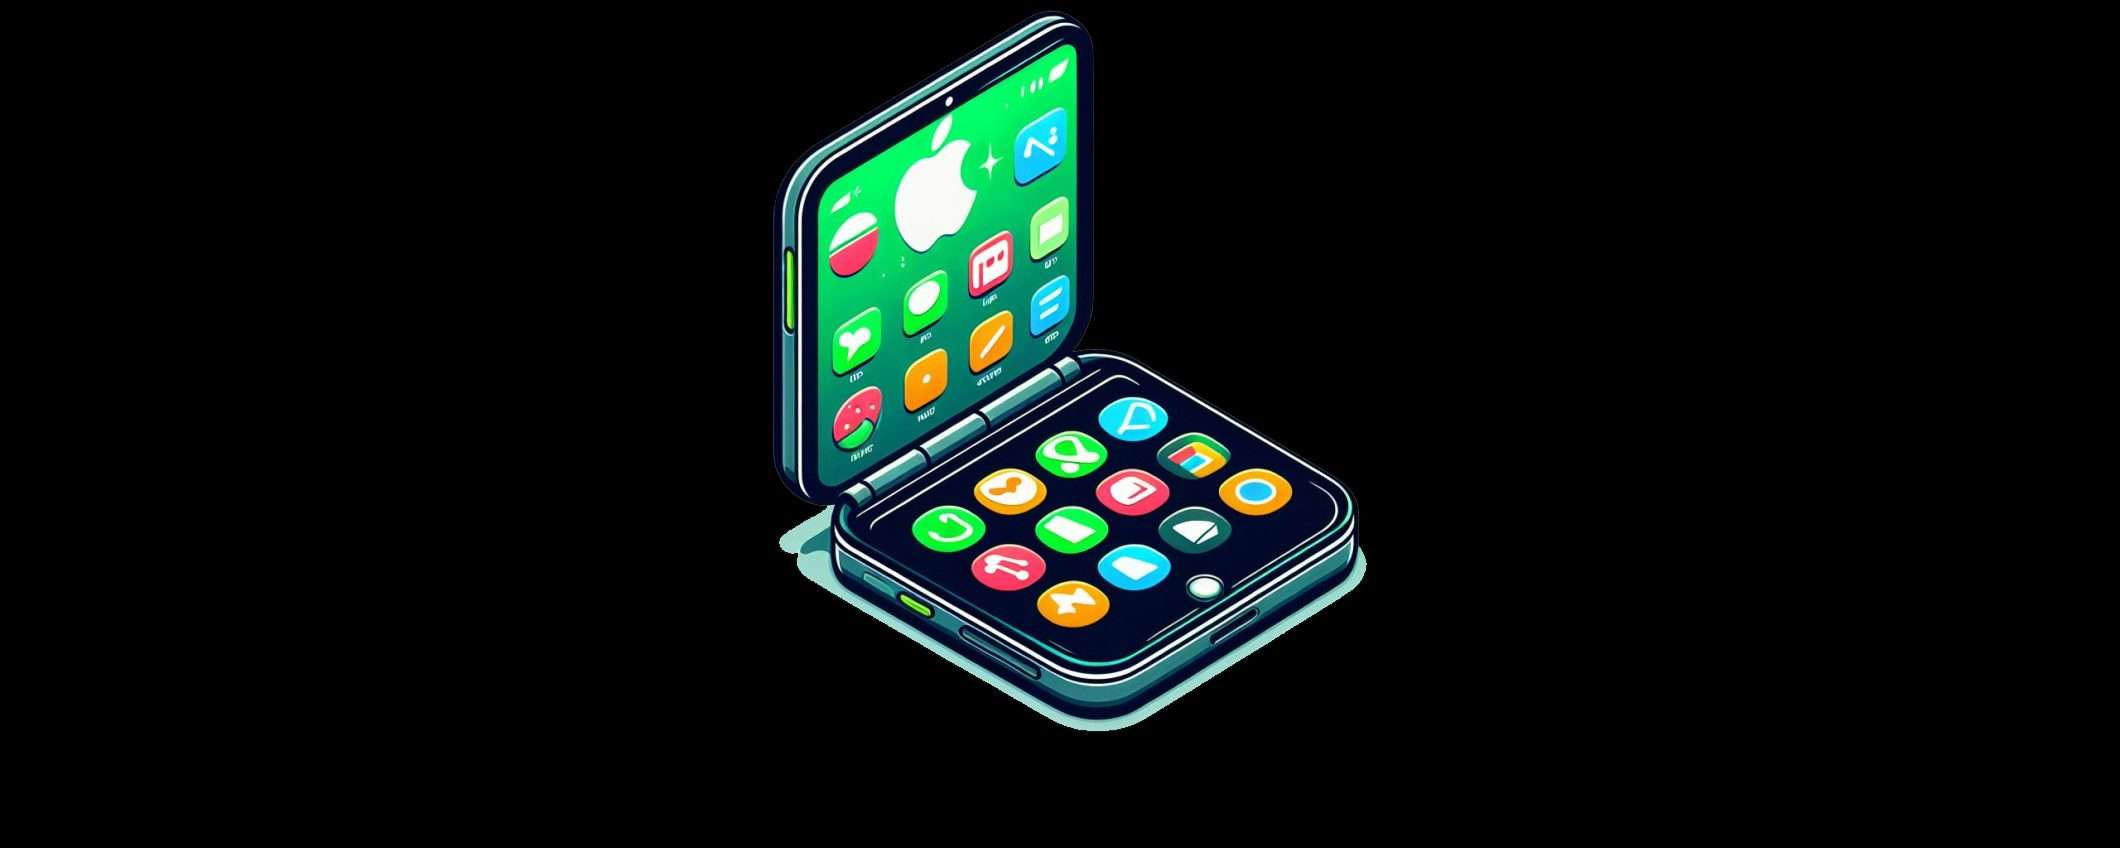 Apple annuncerà un iPhone pieghevole nel 2026?